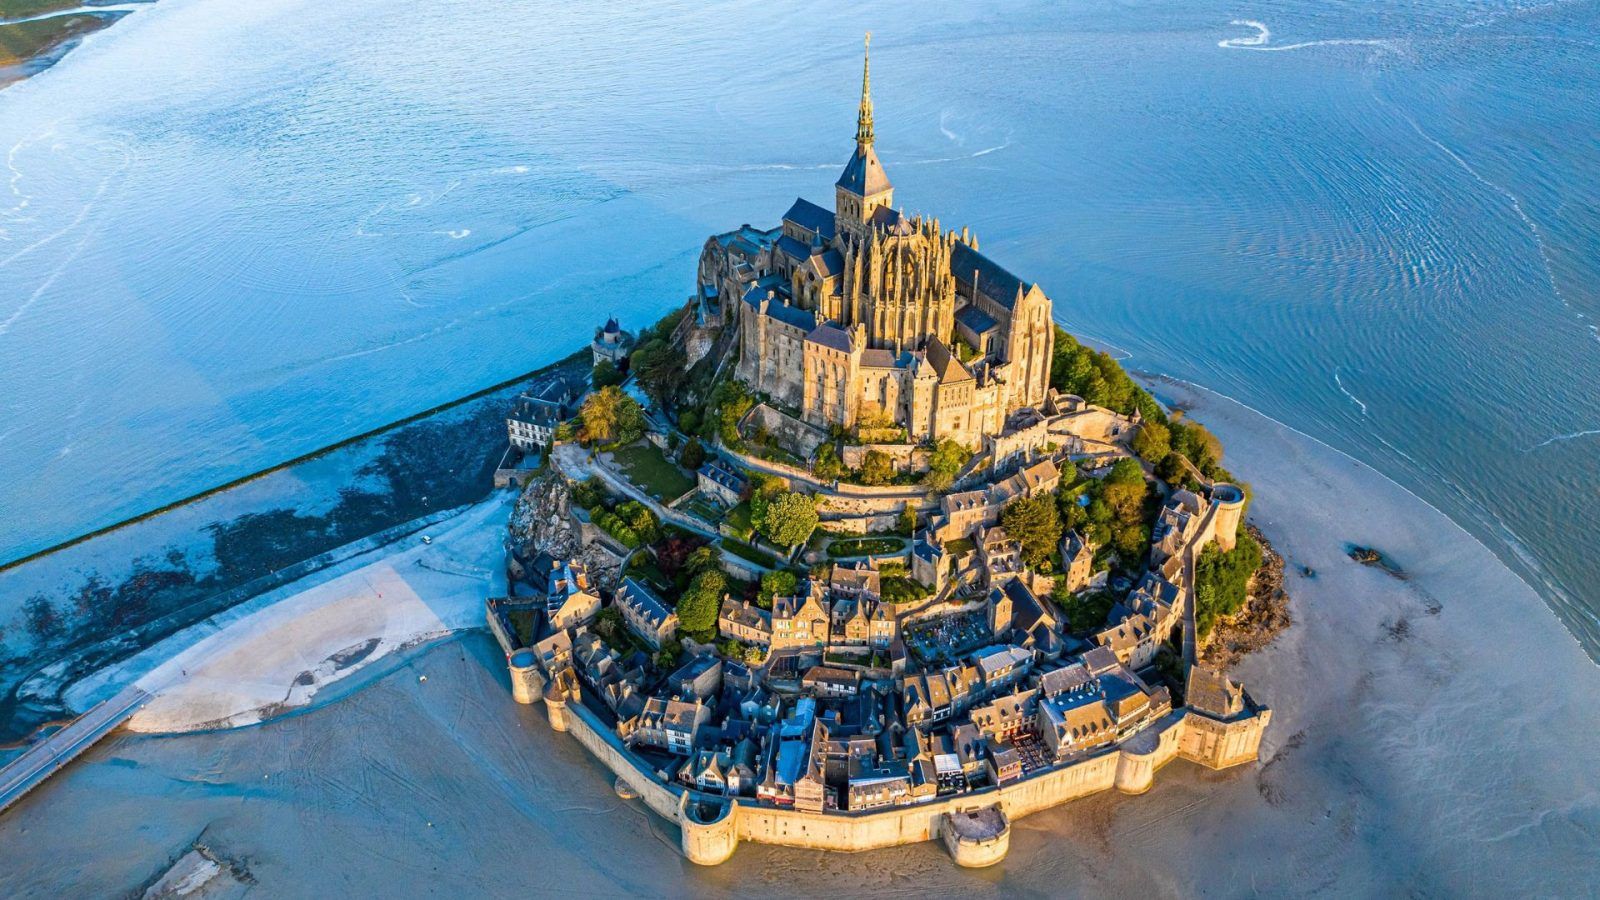 My favourite place: Mont Saint Michel, France